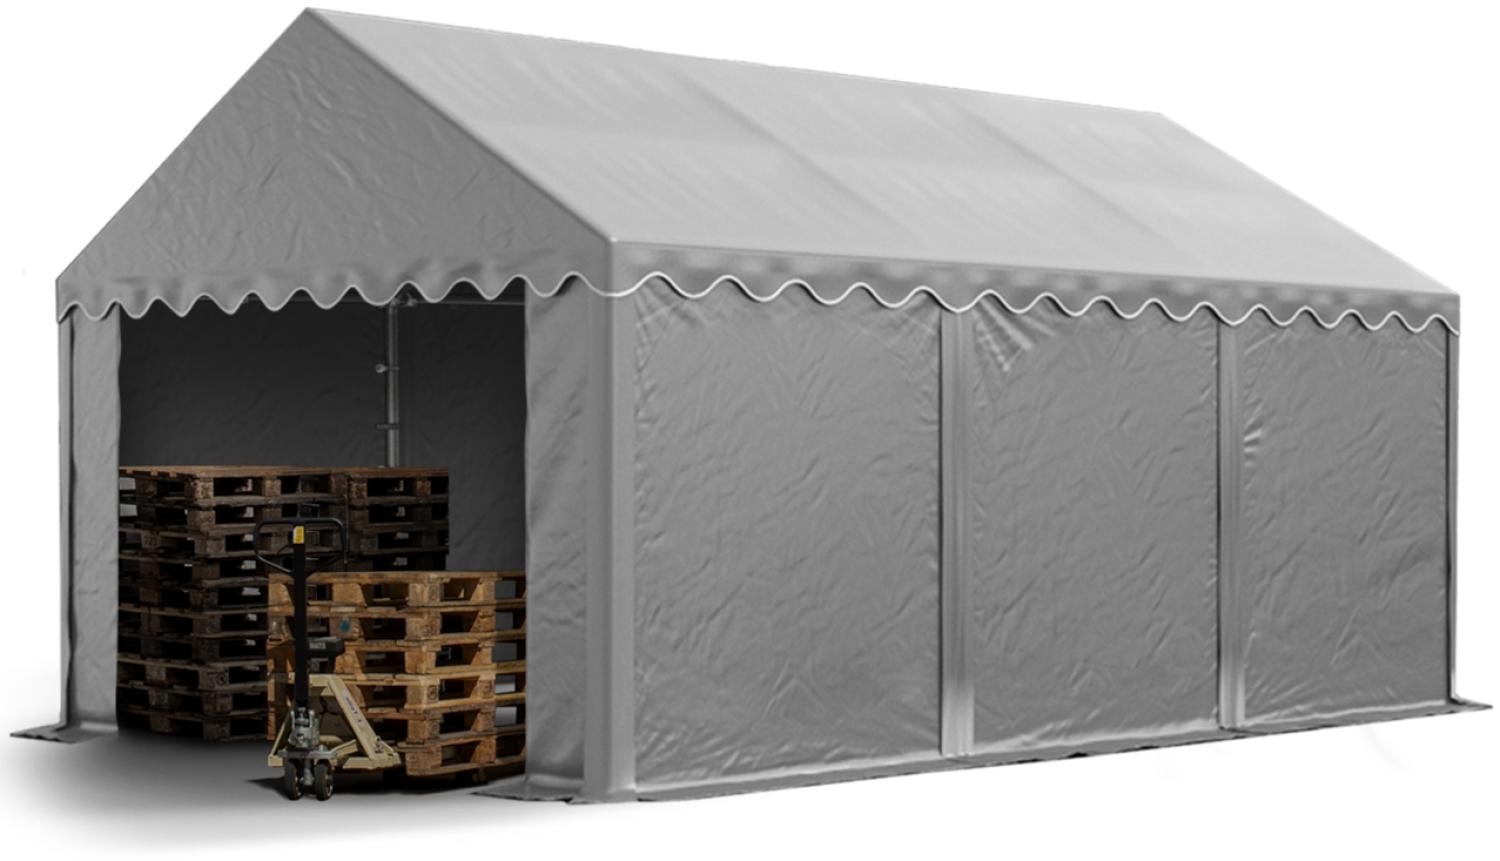 Stabiles Lagerzelt 4x6 m Unterstand mit Bodenrahmen und Dachverstärkung PVC Plane 800 N grau 100% wasserdicht Zelthalle Weidezelt Bild 1